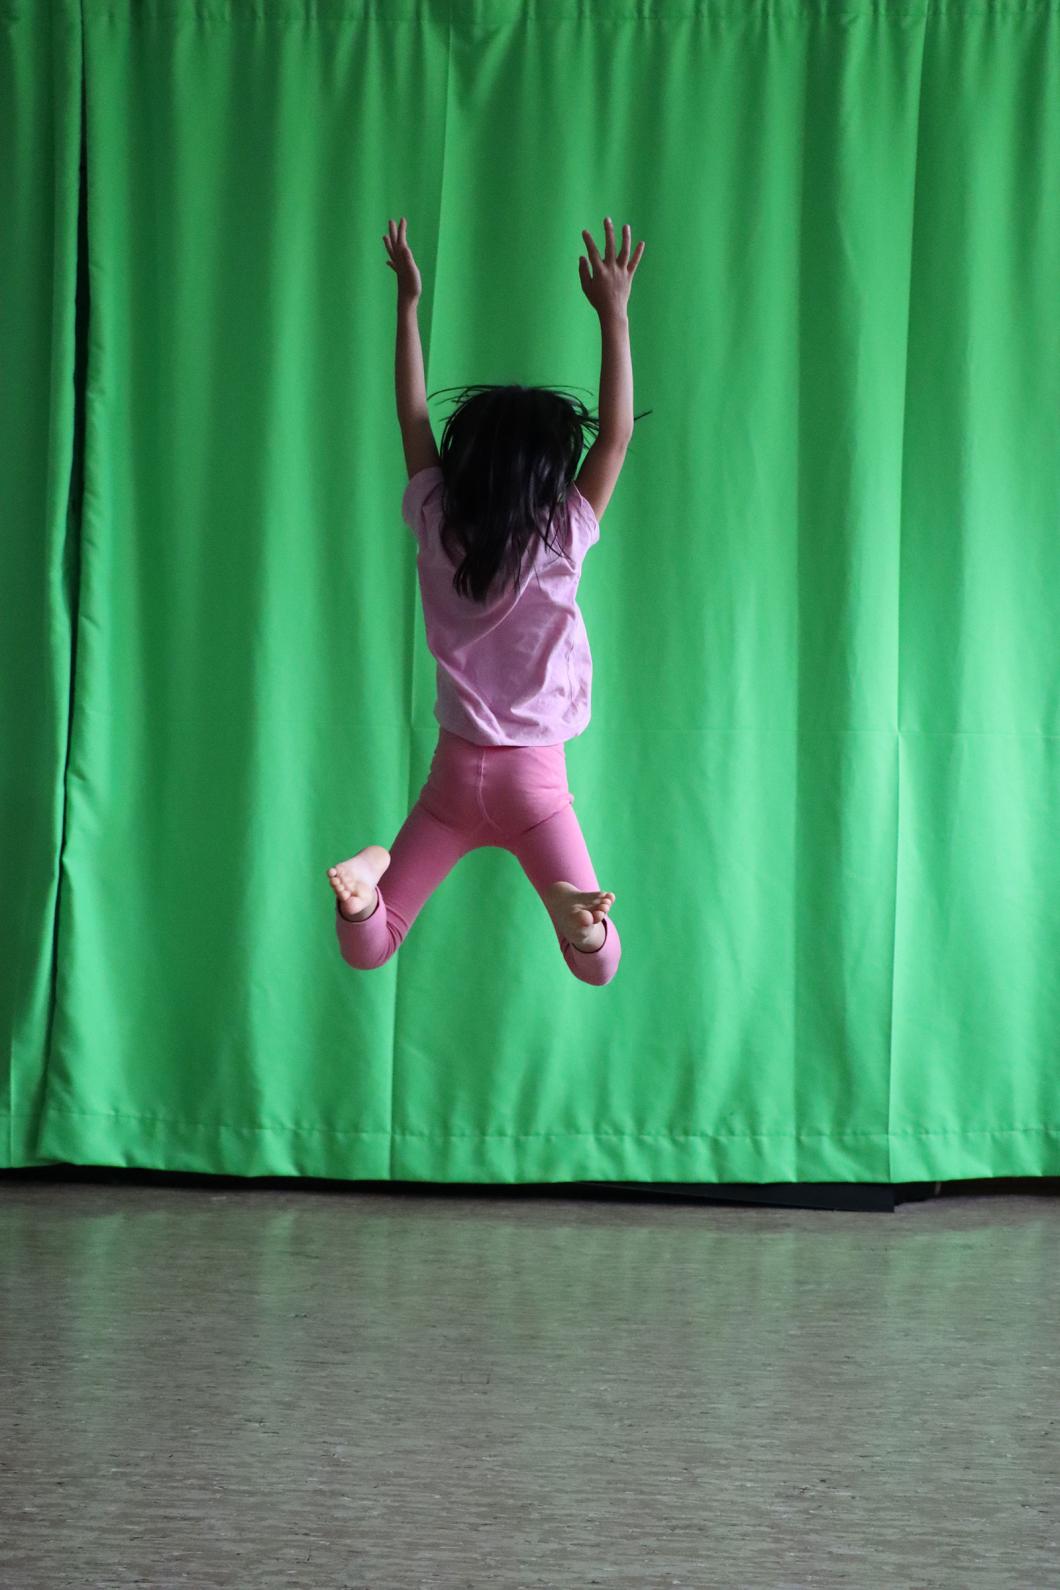 Ein Kind macht einen Luftsprung vor einem grünen Vorhang